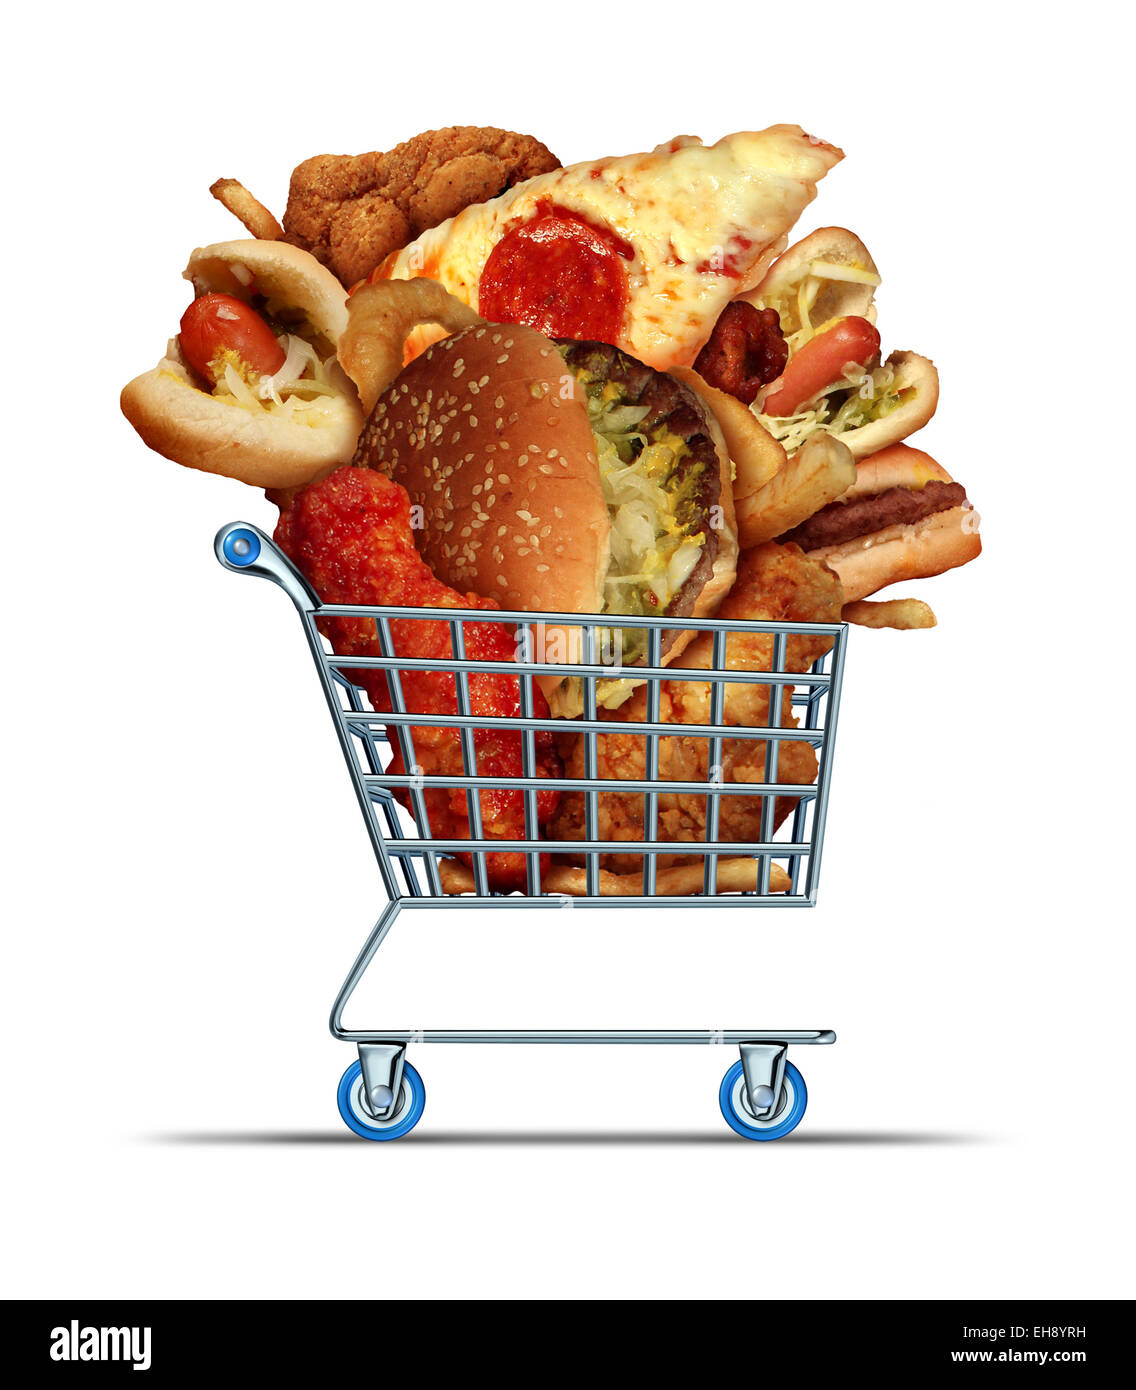 Ungesunde Lebensmittel einkaufen wie eine Diät-Konzept mit fettig gebraten herausnehmen Zwiebel Ringe Burger und Hot Dogs mit Brathähnchen Pommes Frites und Pizza in einem Shop Warenkorb als Symbol des Verbrauchers Essgewohnheiten. Stockfoto